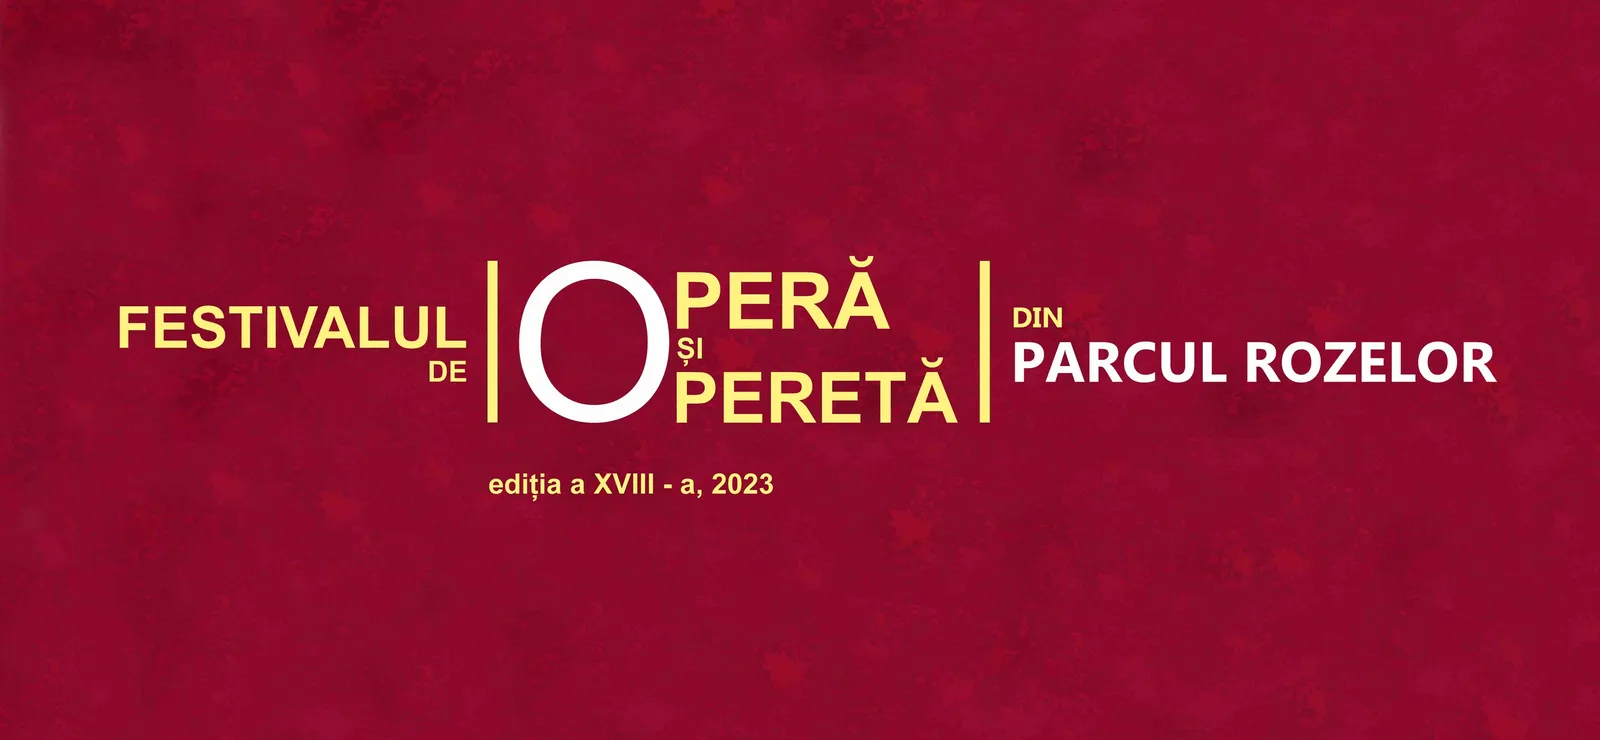 Festivalul de operă și operetă - Ediția XVIII